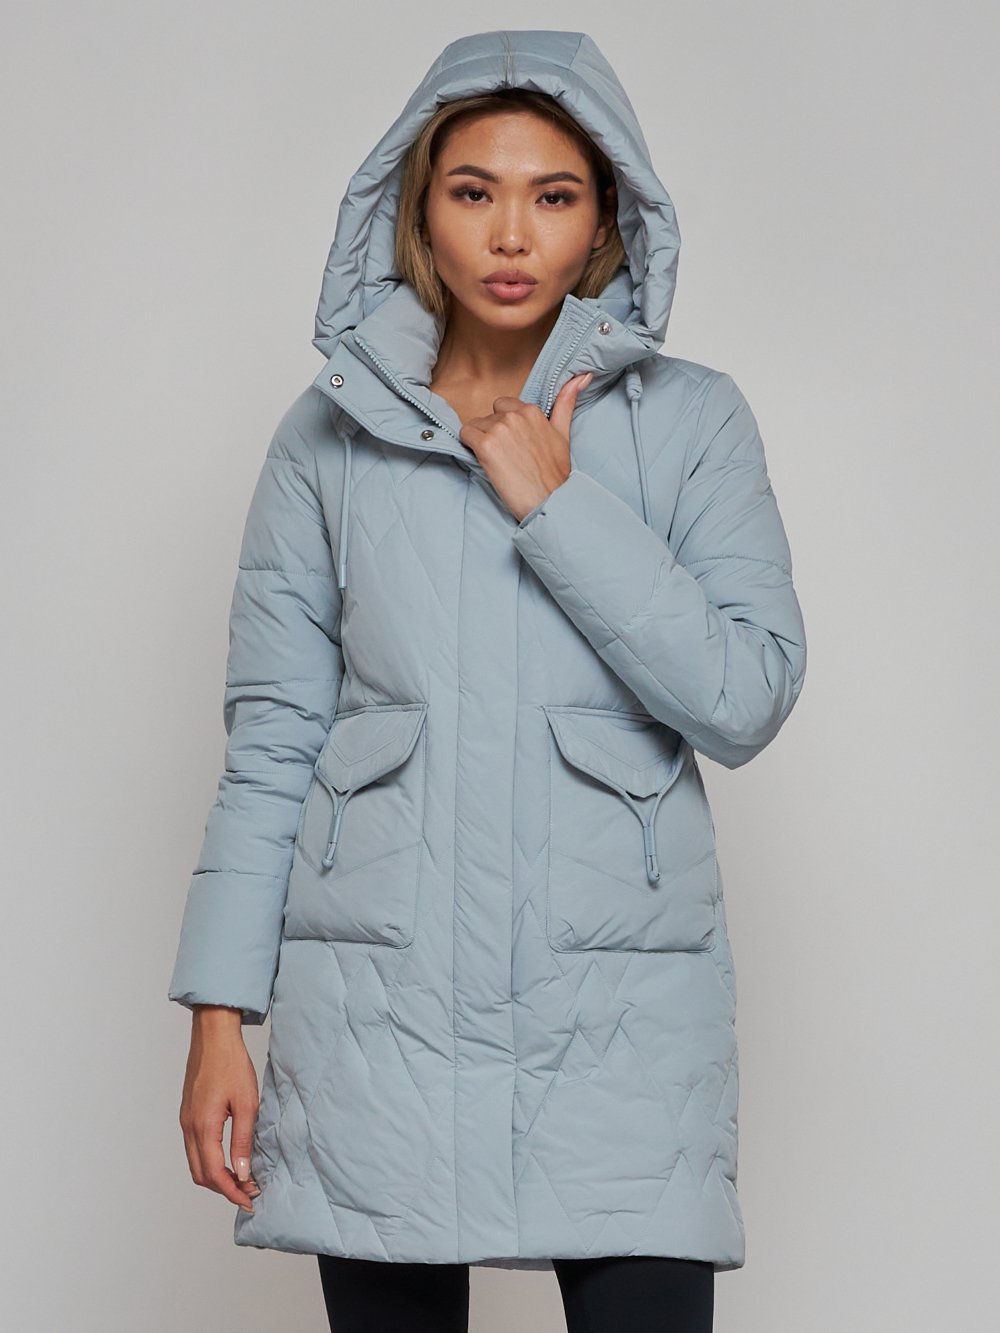 Купить куртку женскую оптом от производителя недорого в Москве 586832Br 1